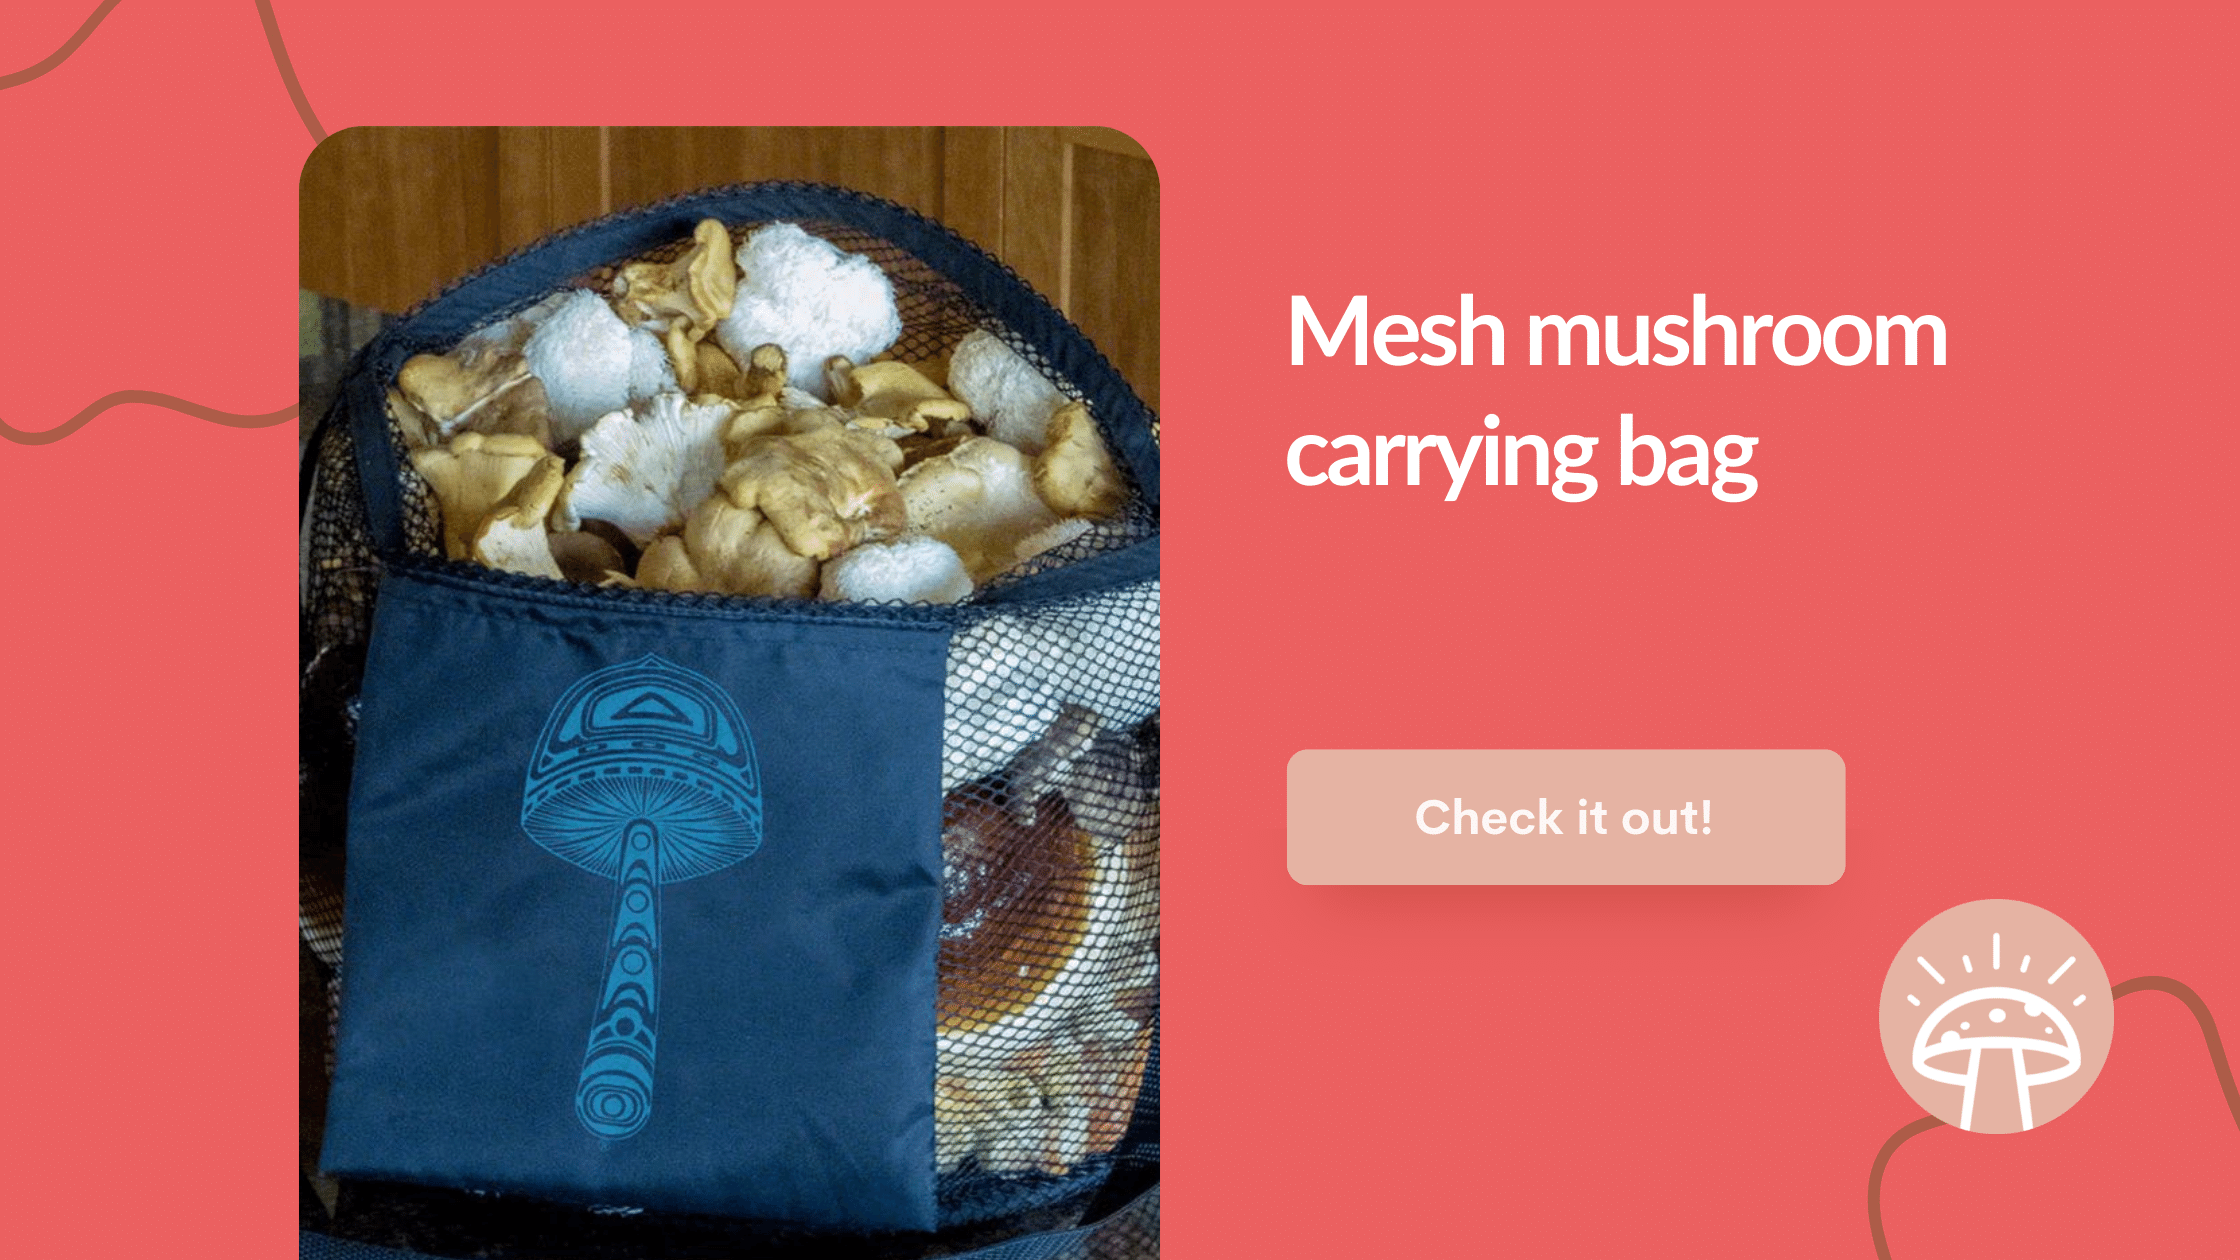 mesh carrying bag for mushrooms